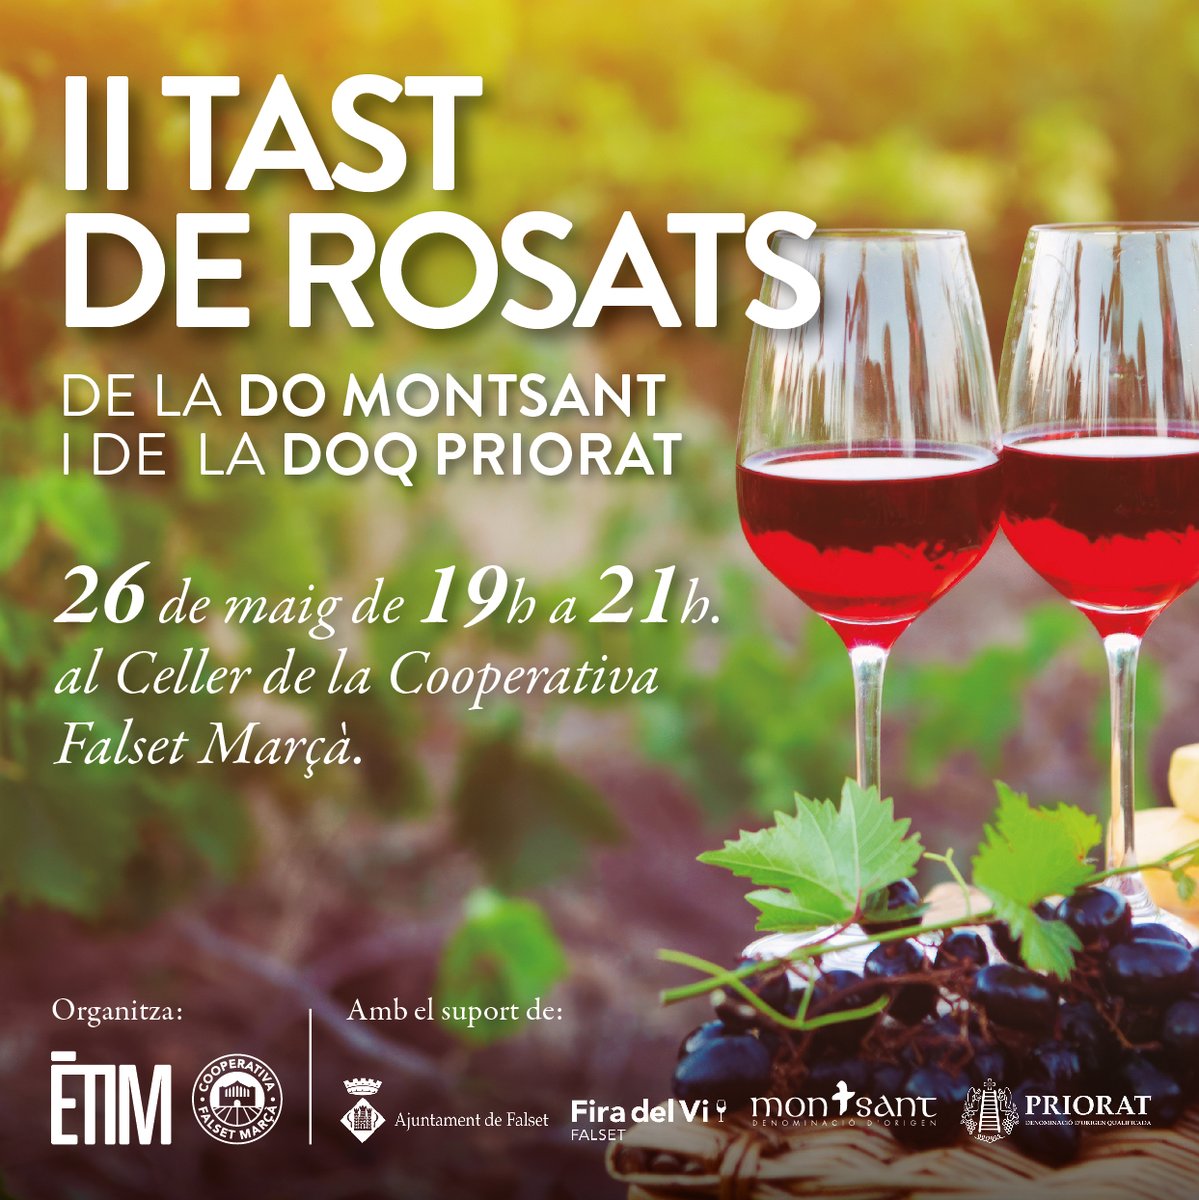 Aquest divendres arriba la 2a edició del Tast de Rosats que organitza @Etimonline Podreu gaudir d'una bona representació de #VinsMontsant i maridar-los amb la proposta gastronòmica de @rest_elCairat i la música de Tu Manu Dj

🗓 26 de maig
🕖19h
📍 Cooperativa Falset Marçà